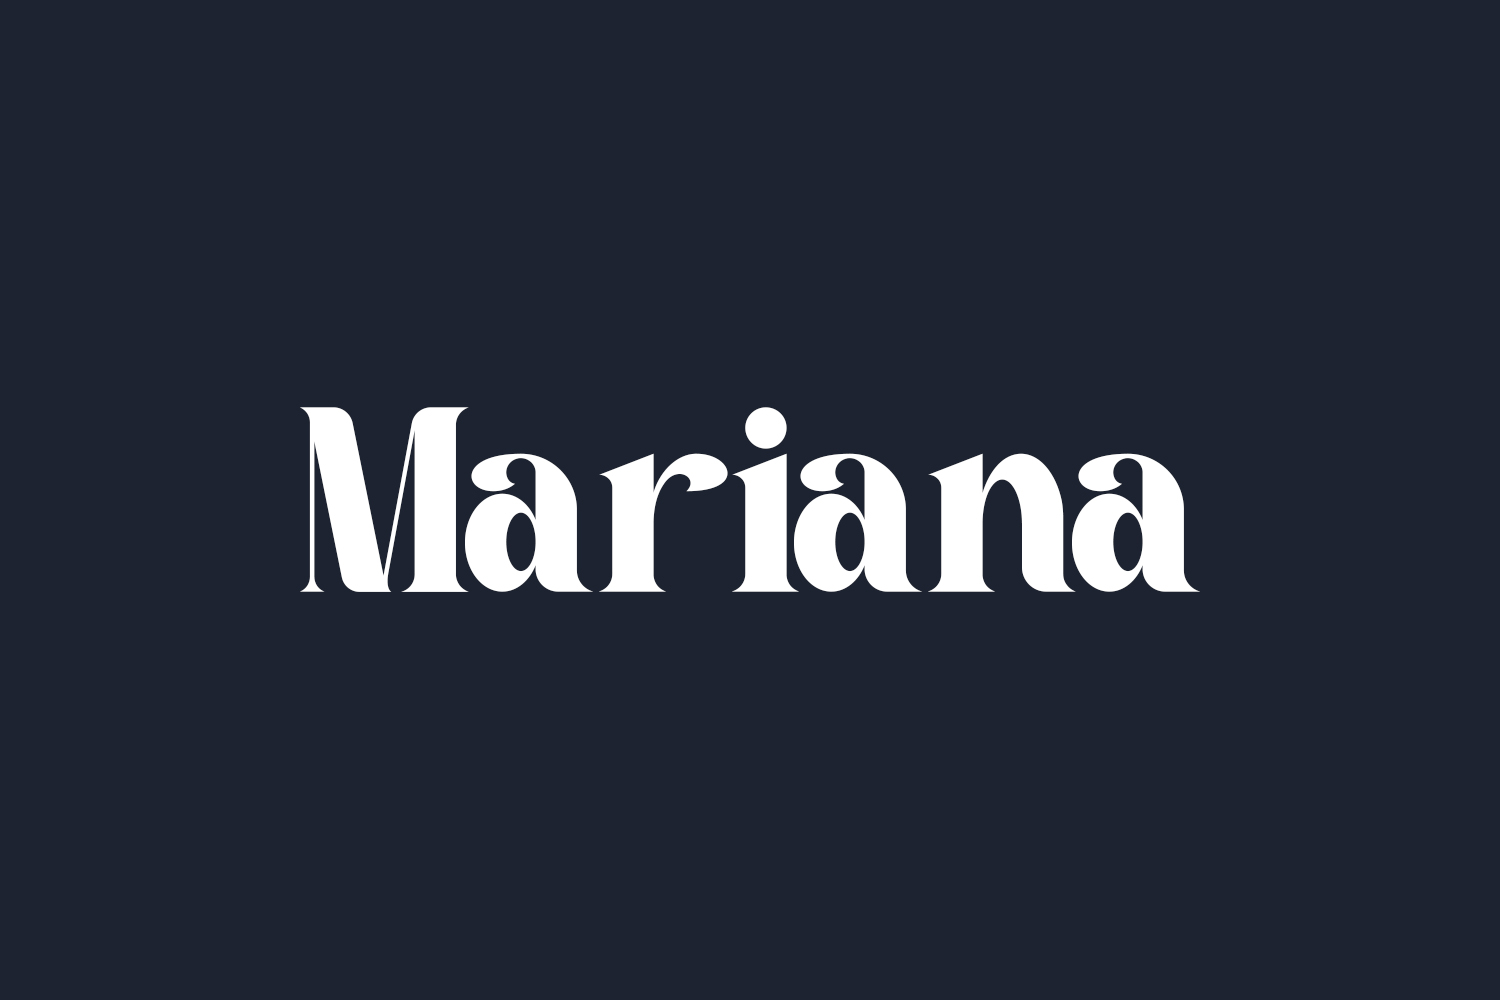 Mariana Free Font